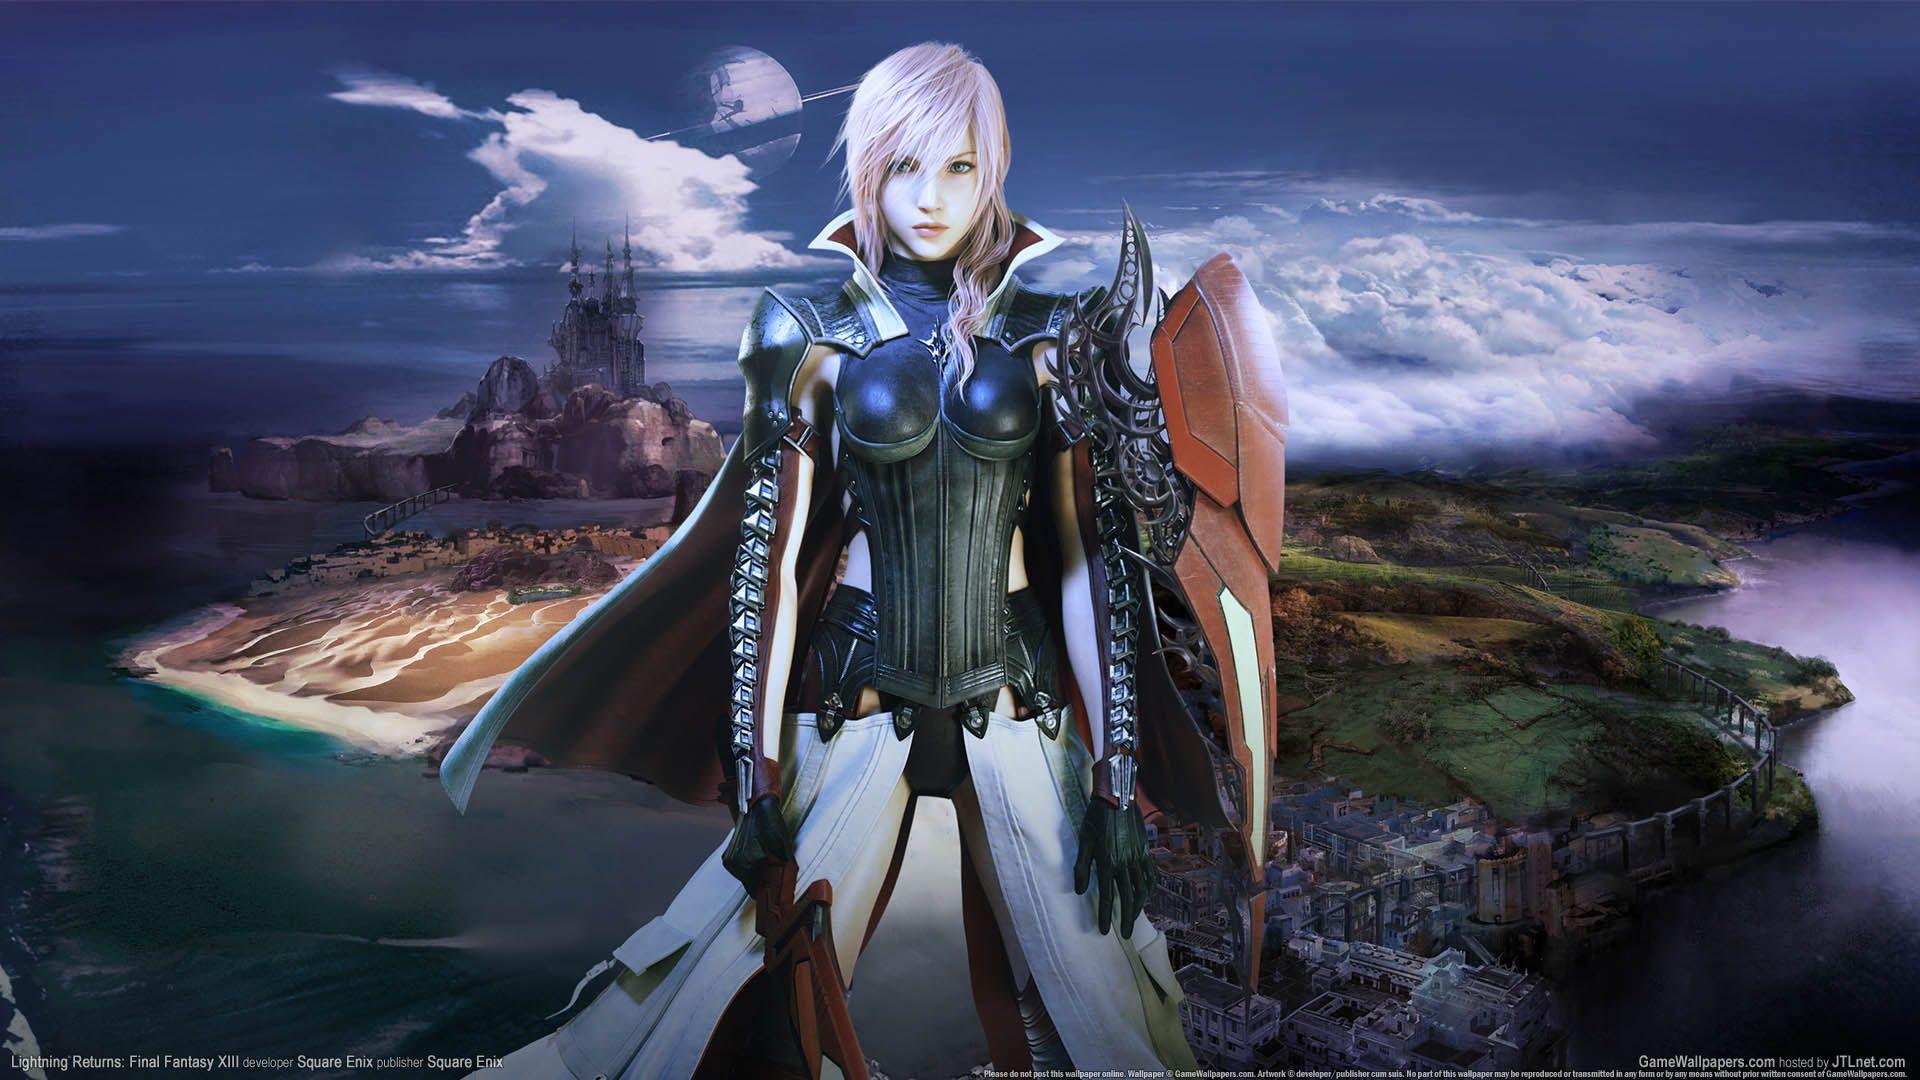 Lightning Returns: Final Fantasy XIII wallpaper or desktop background